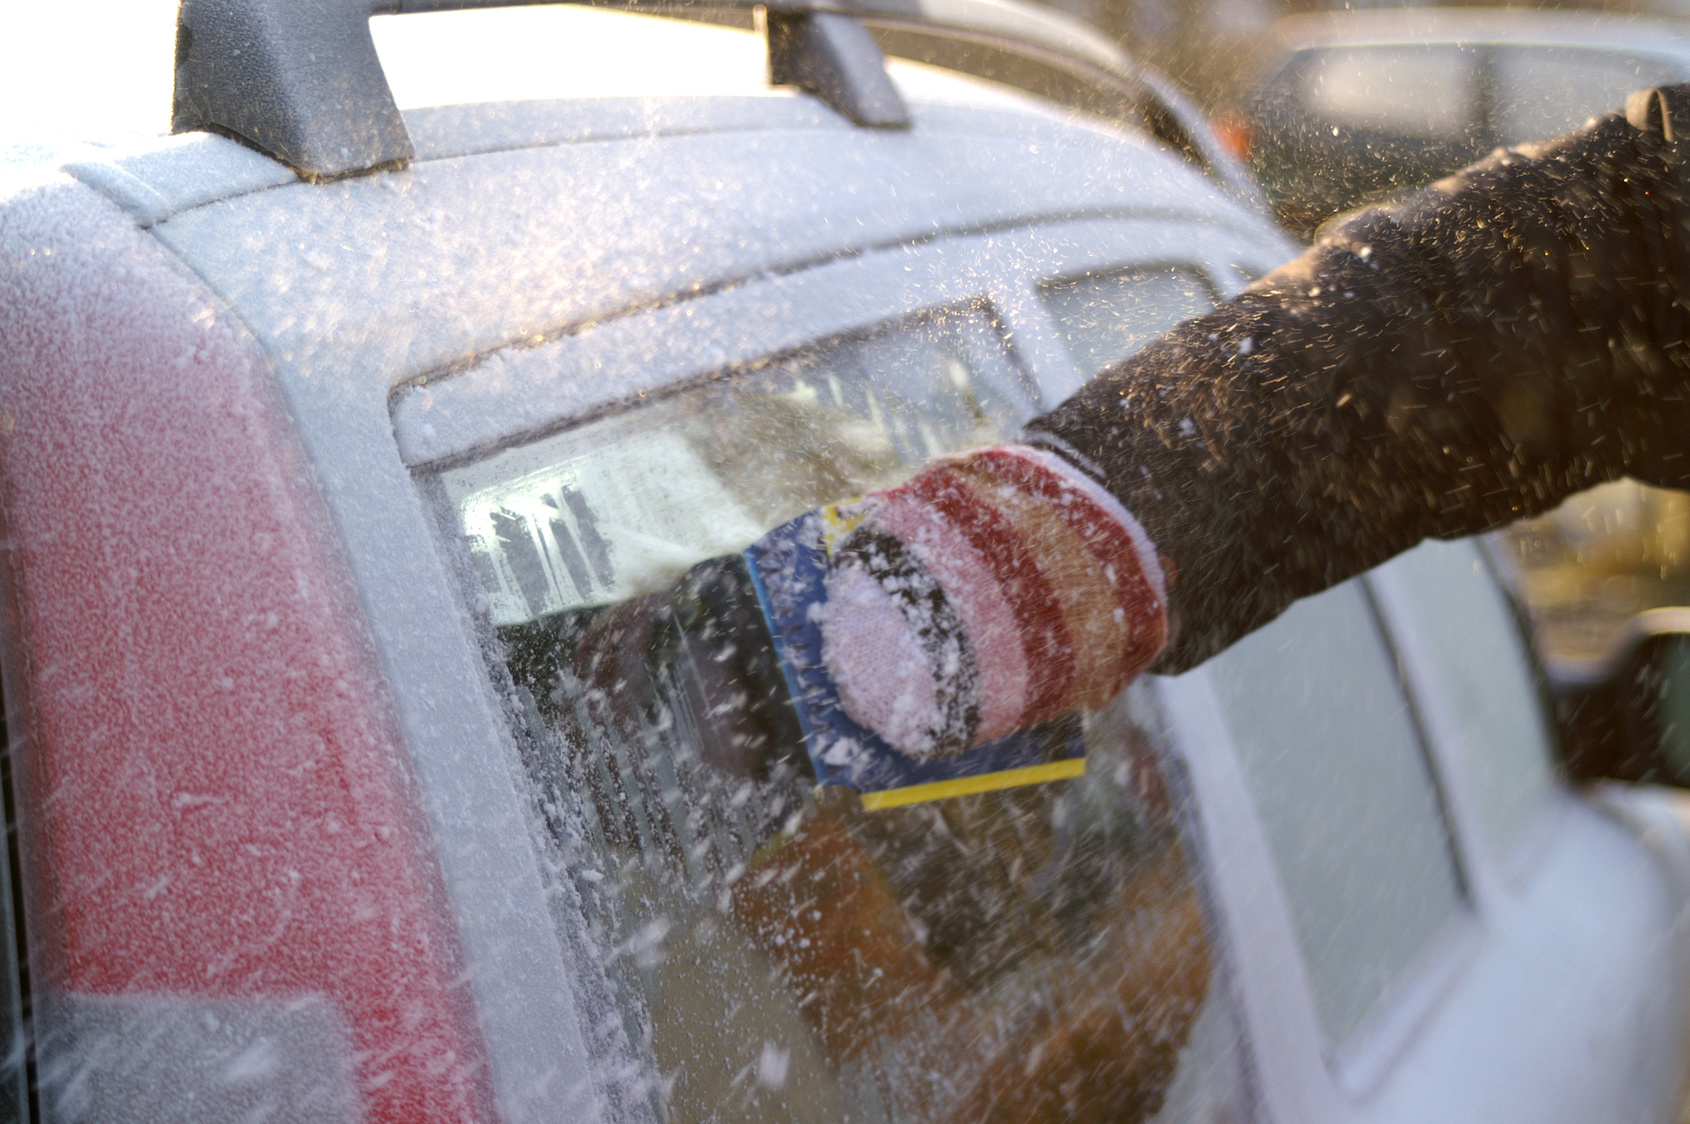 Enteisungs spray für Auto Windschutz scheibe Enteiser Spray Winter